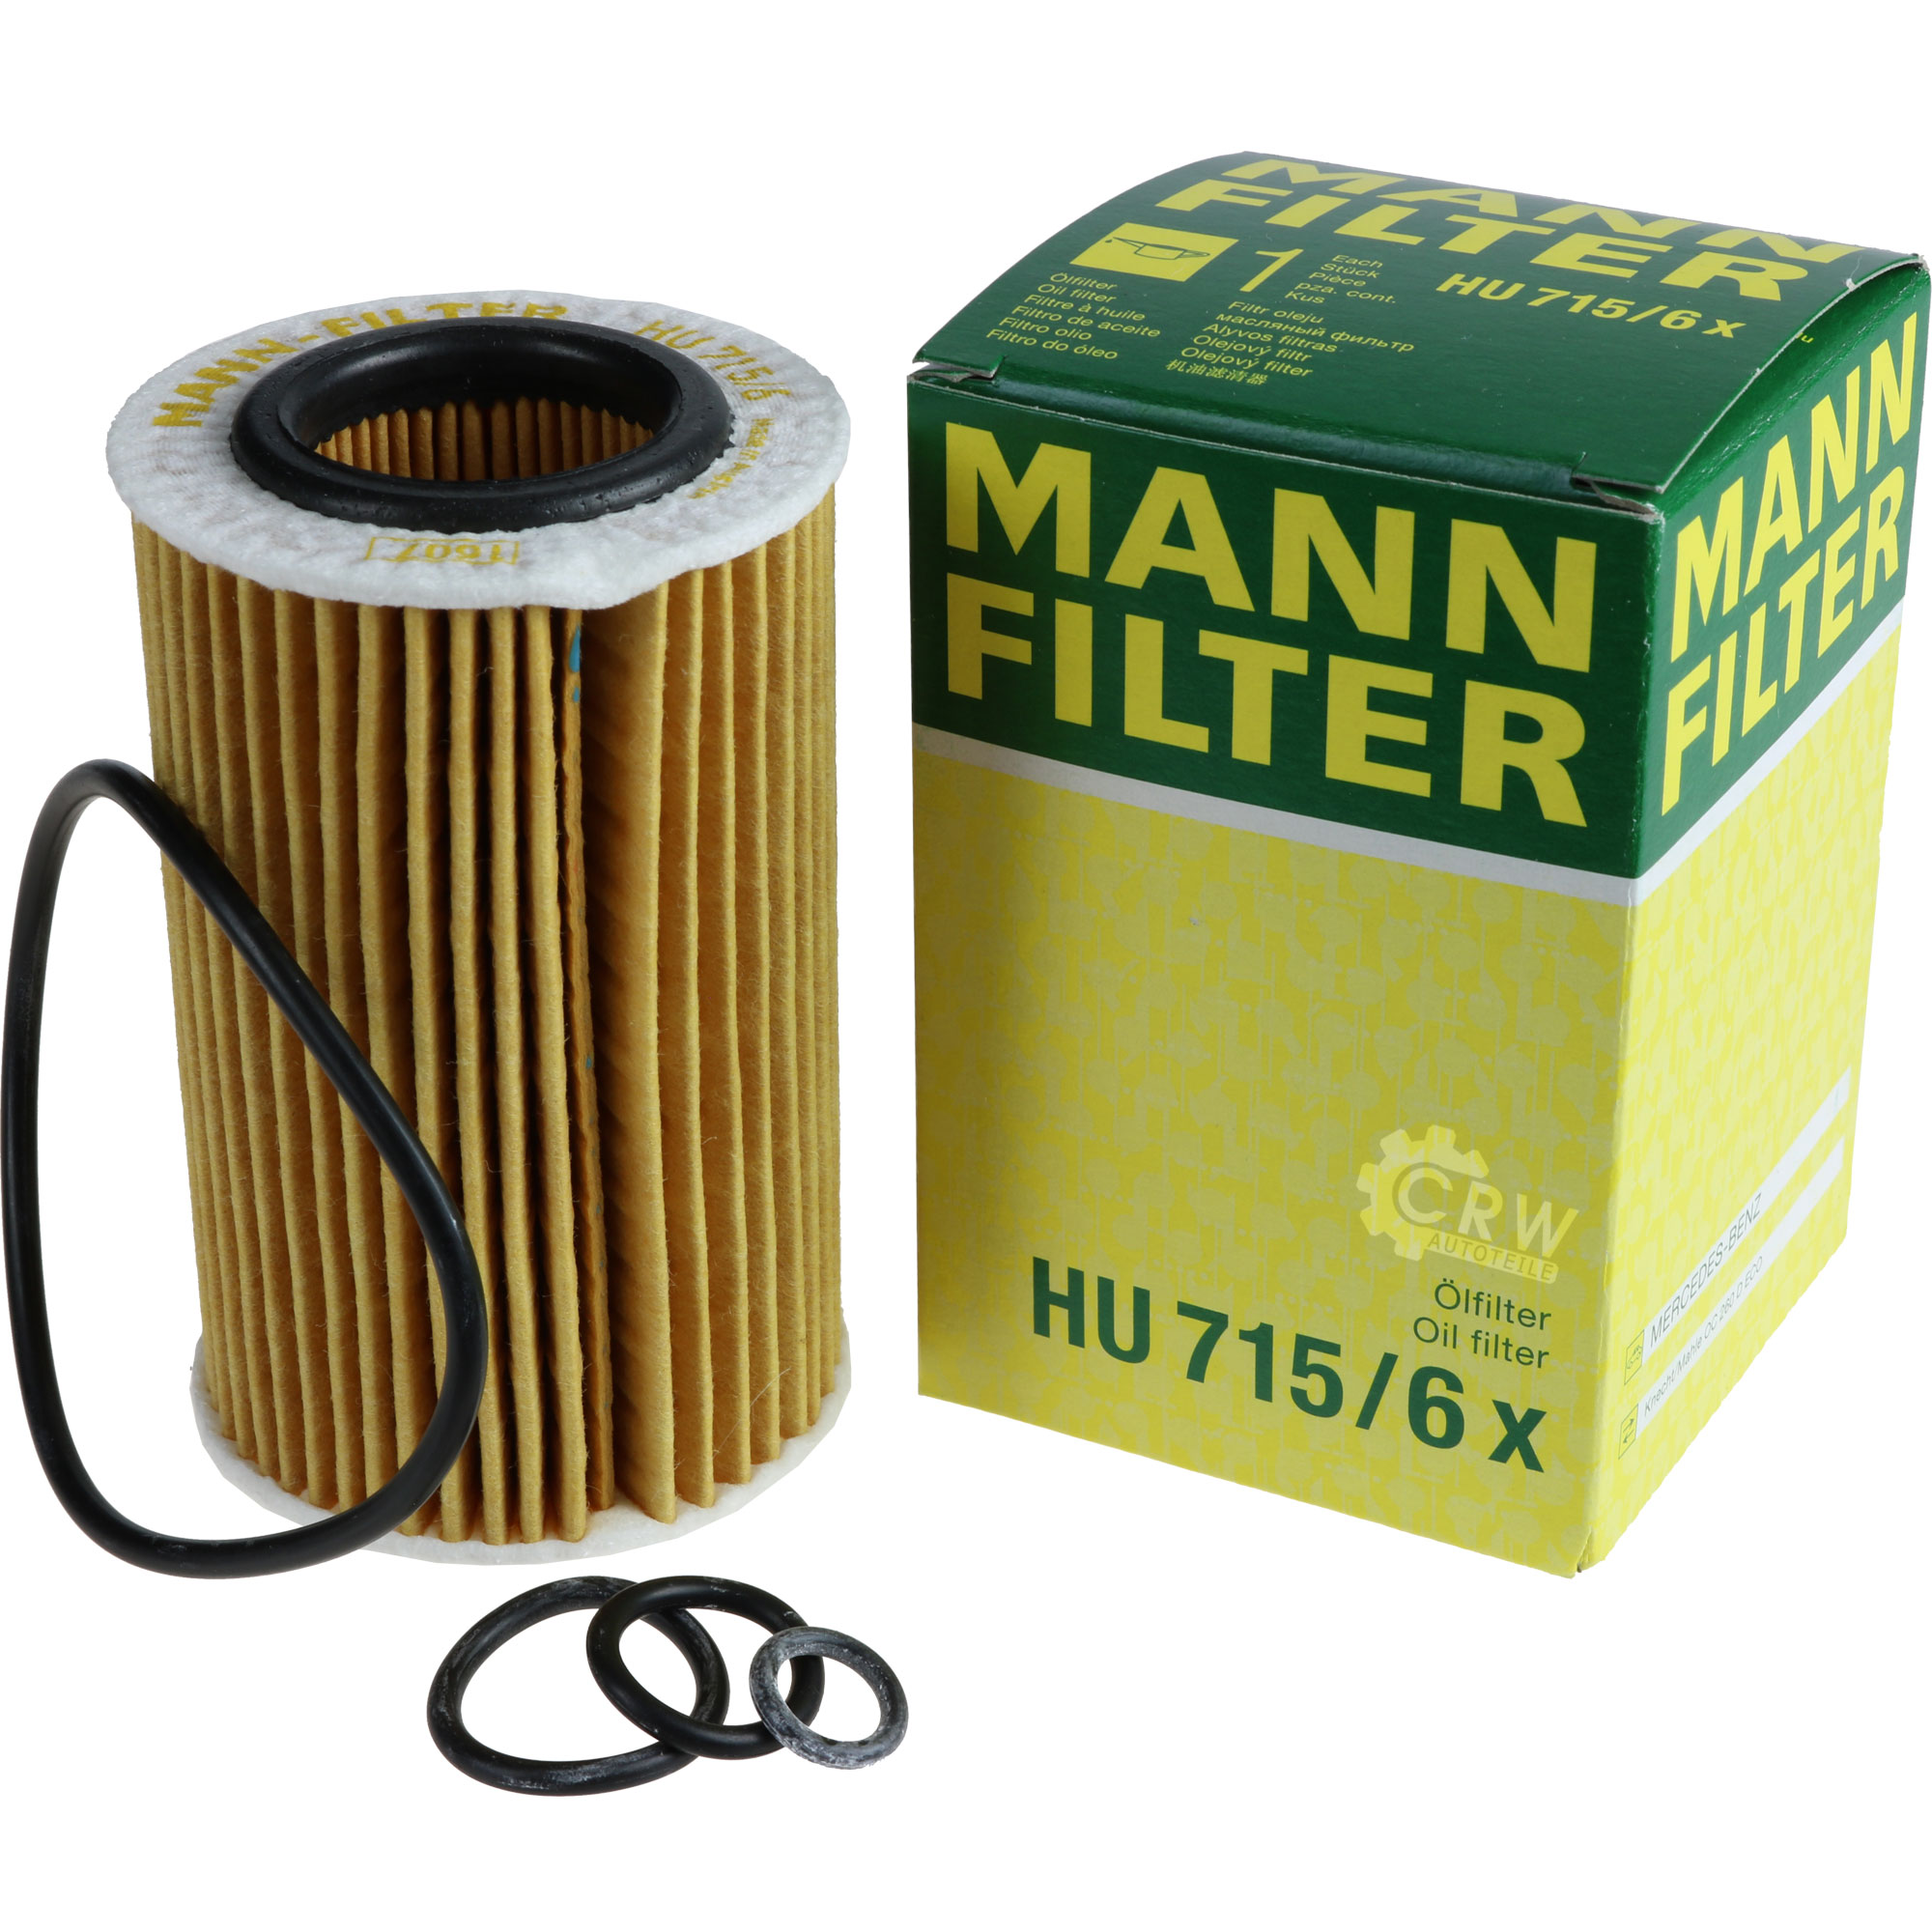 MANN-FILTER Ölfilter HU 715/6 x Oil Filter